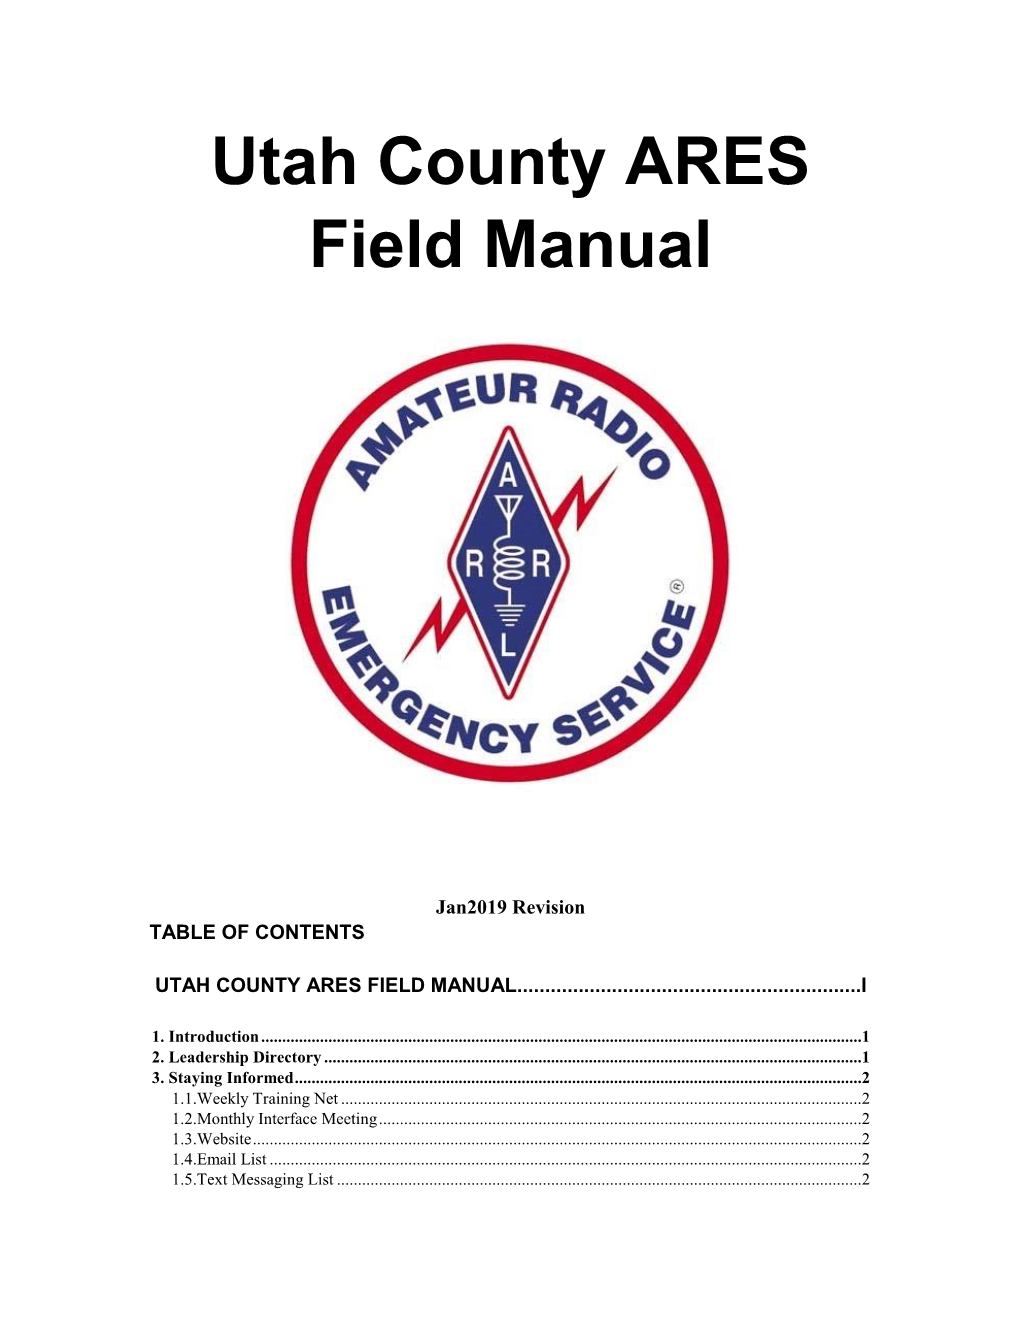 Utah County Ares Field Manual